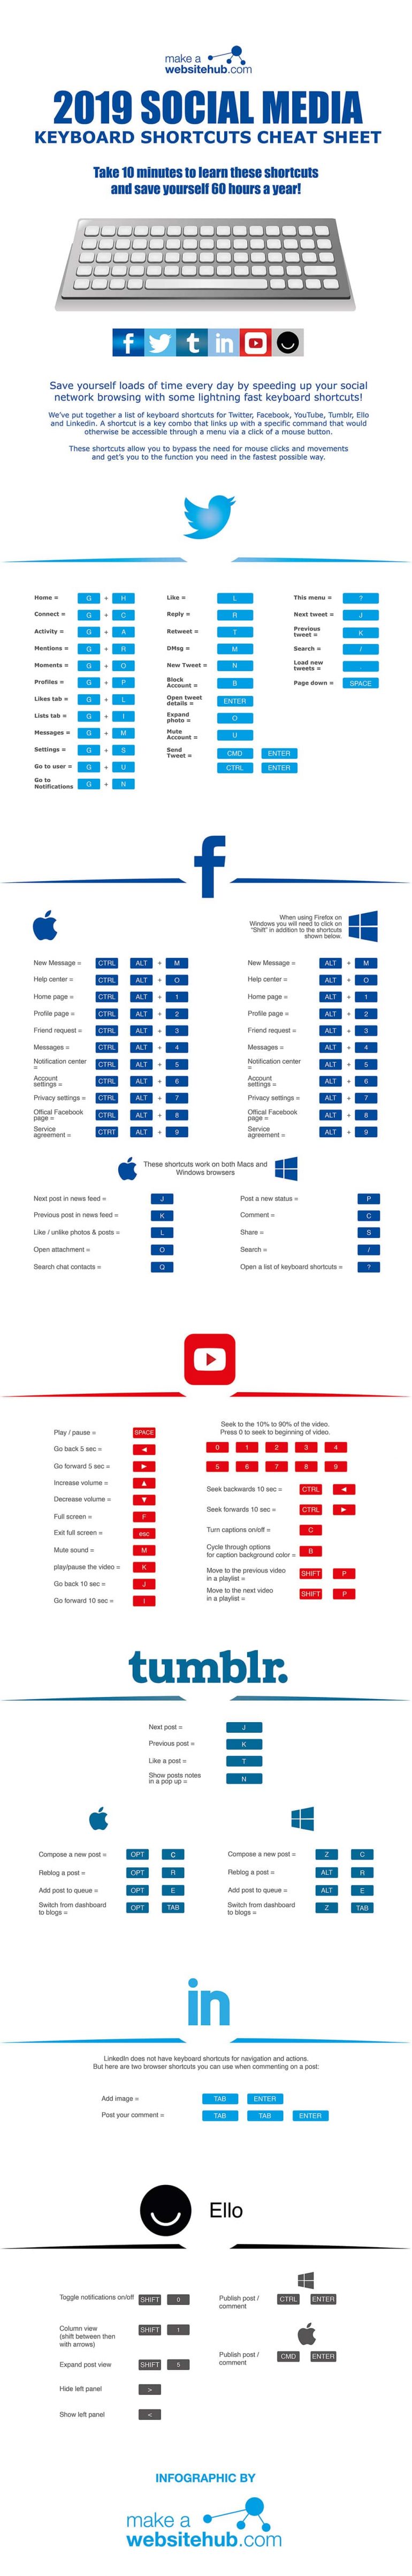 Infographic met de socialmedia-shortcuts voor 2019.